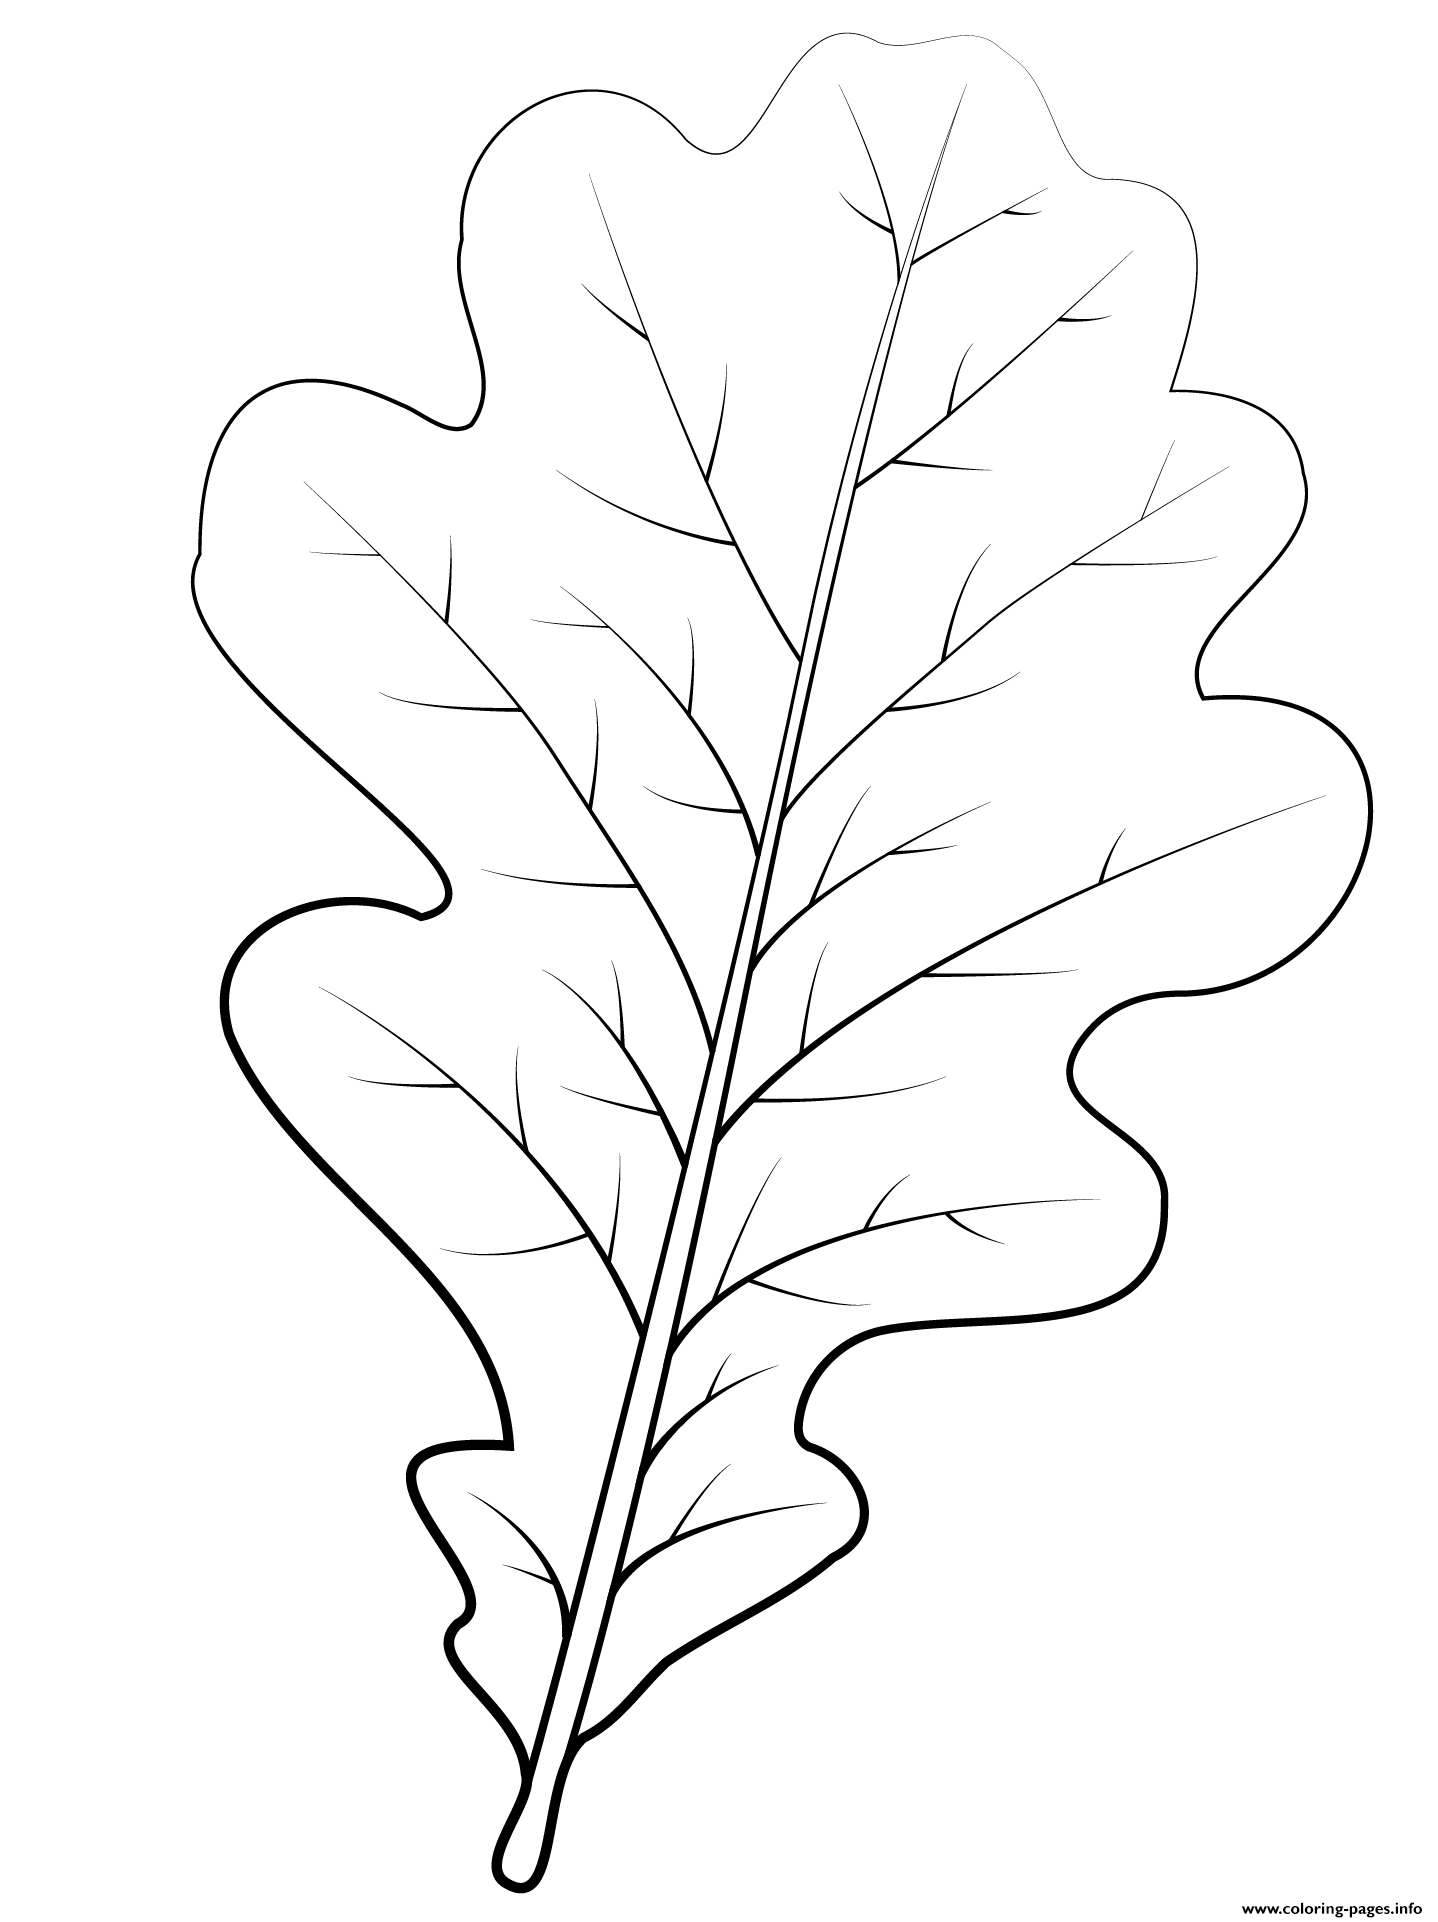 Раскраска Листья дуба и желуди